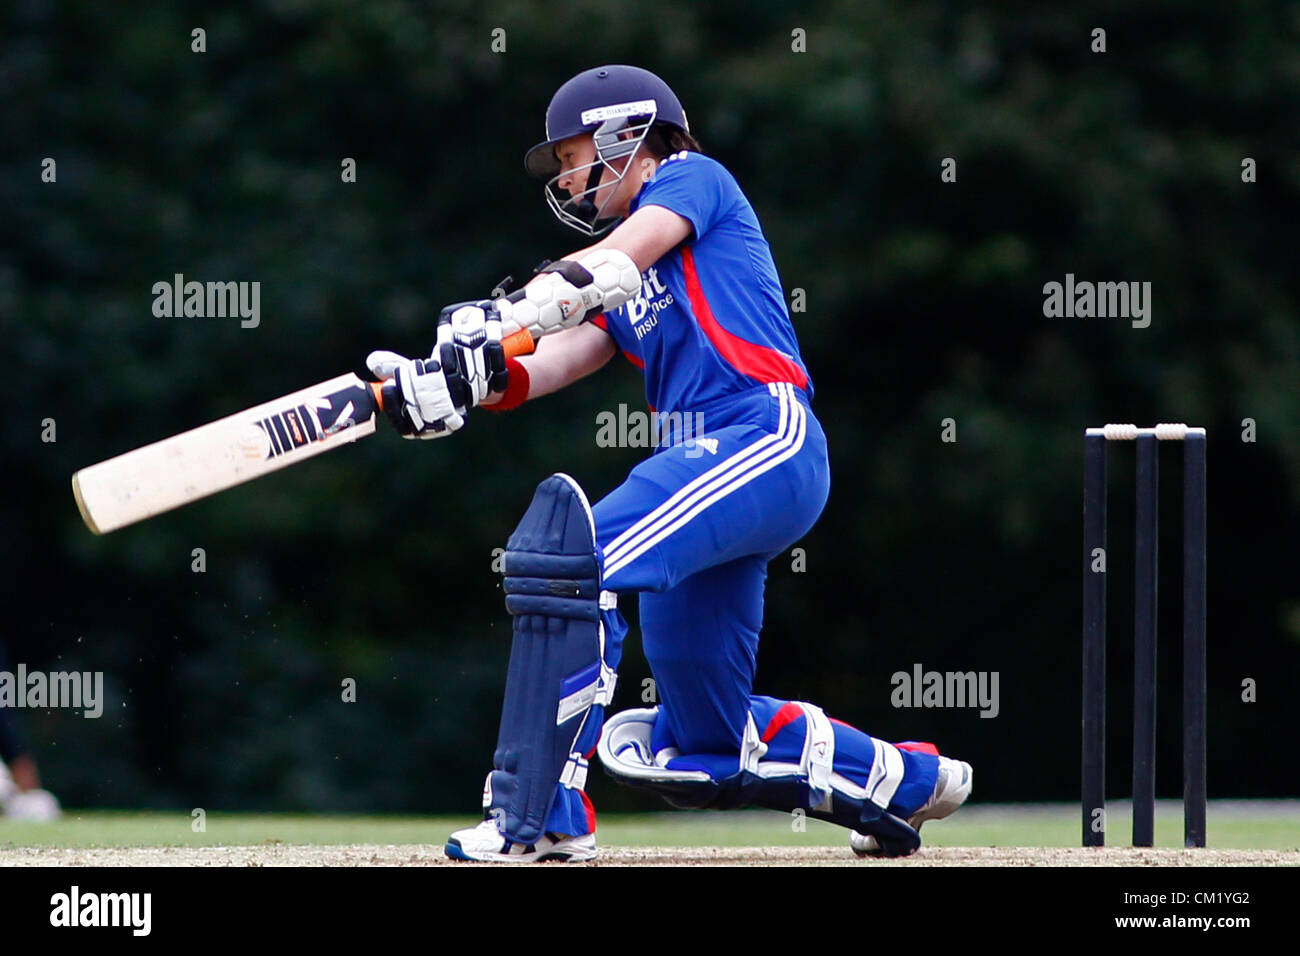 16/09/2012 Arundel, Angleterre. Arran Brindle batting au cours de la cinquième womens T20 International match entre l'Angleterre et l'Antilles joué à Arundel Castle Cricket Ground : crédit obligatoire : Mitchell Gunn Banque D'Images